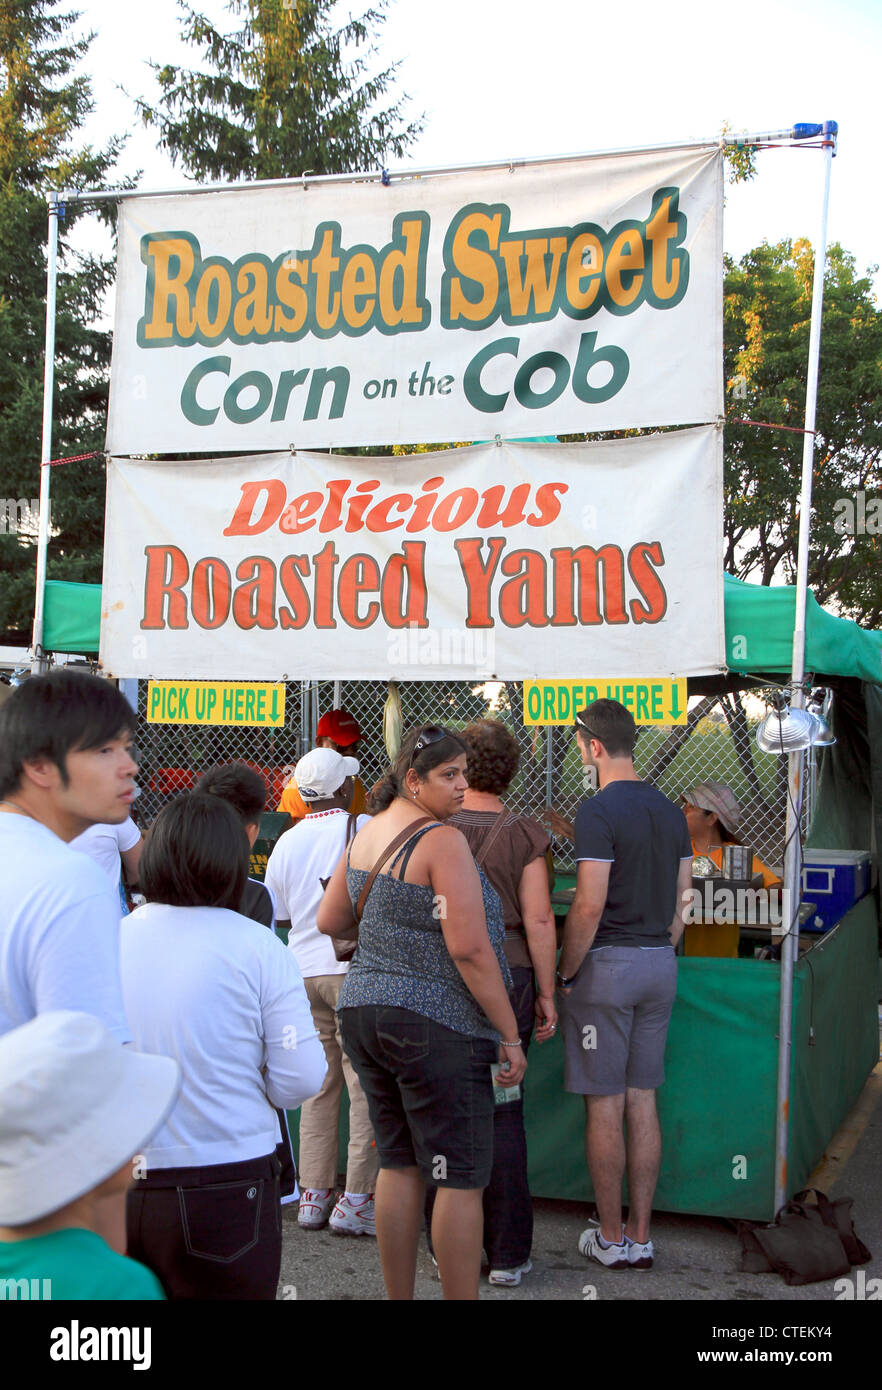 Ein geröstetem Mais Maiskolben Stand auf ein outdoor-Event in Kanada Stockfoto